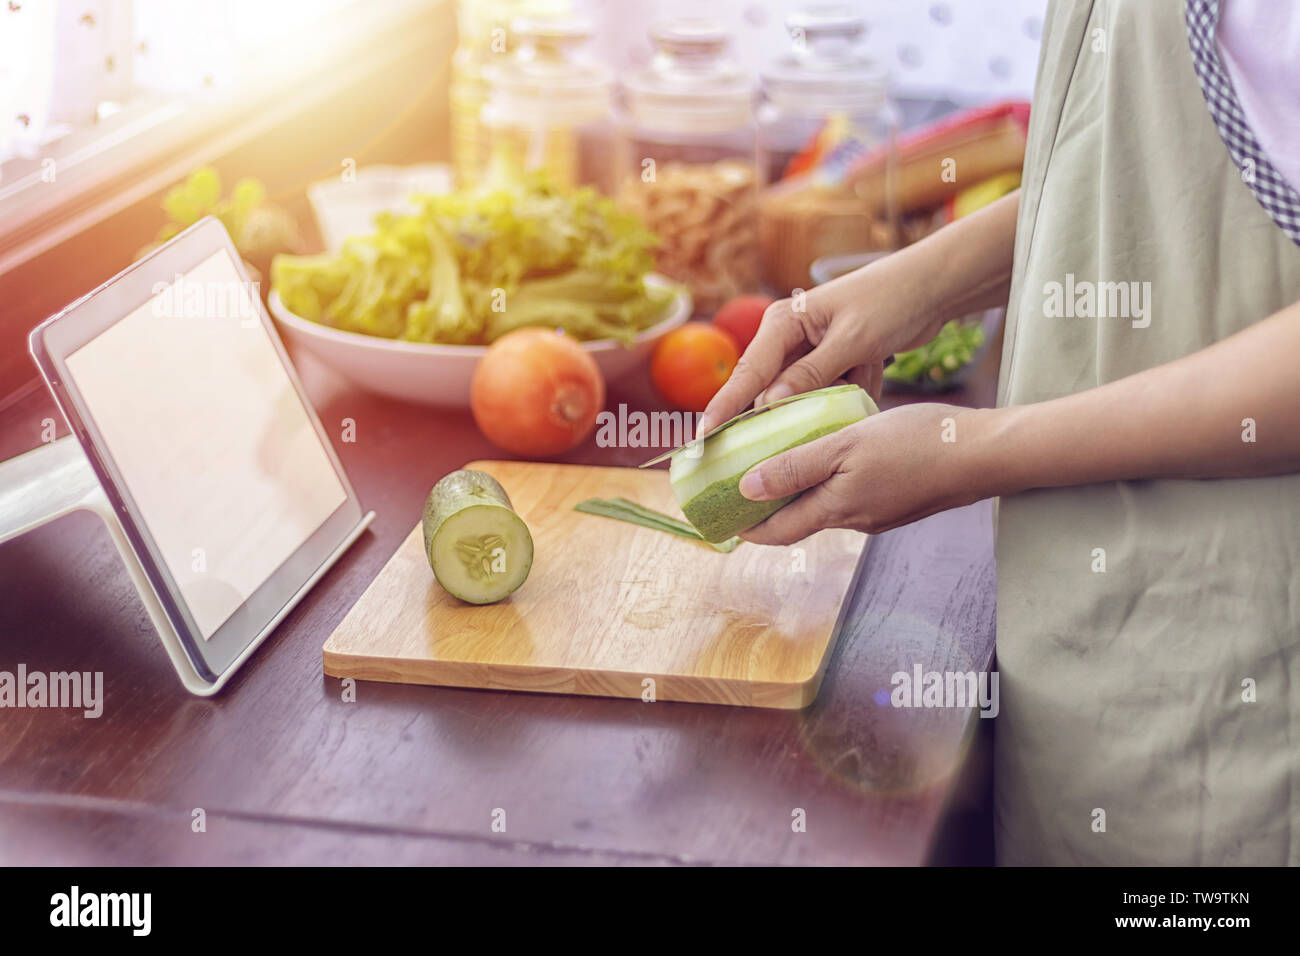 Lado femenino trocear las verduras, preparar los ingredientes para cocinar siga cocinando vídeo online en el sitio web a través de la tableta. Cocinar el contenido de intern Foto de stock